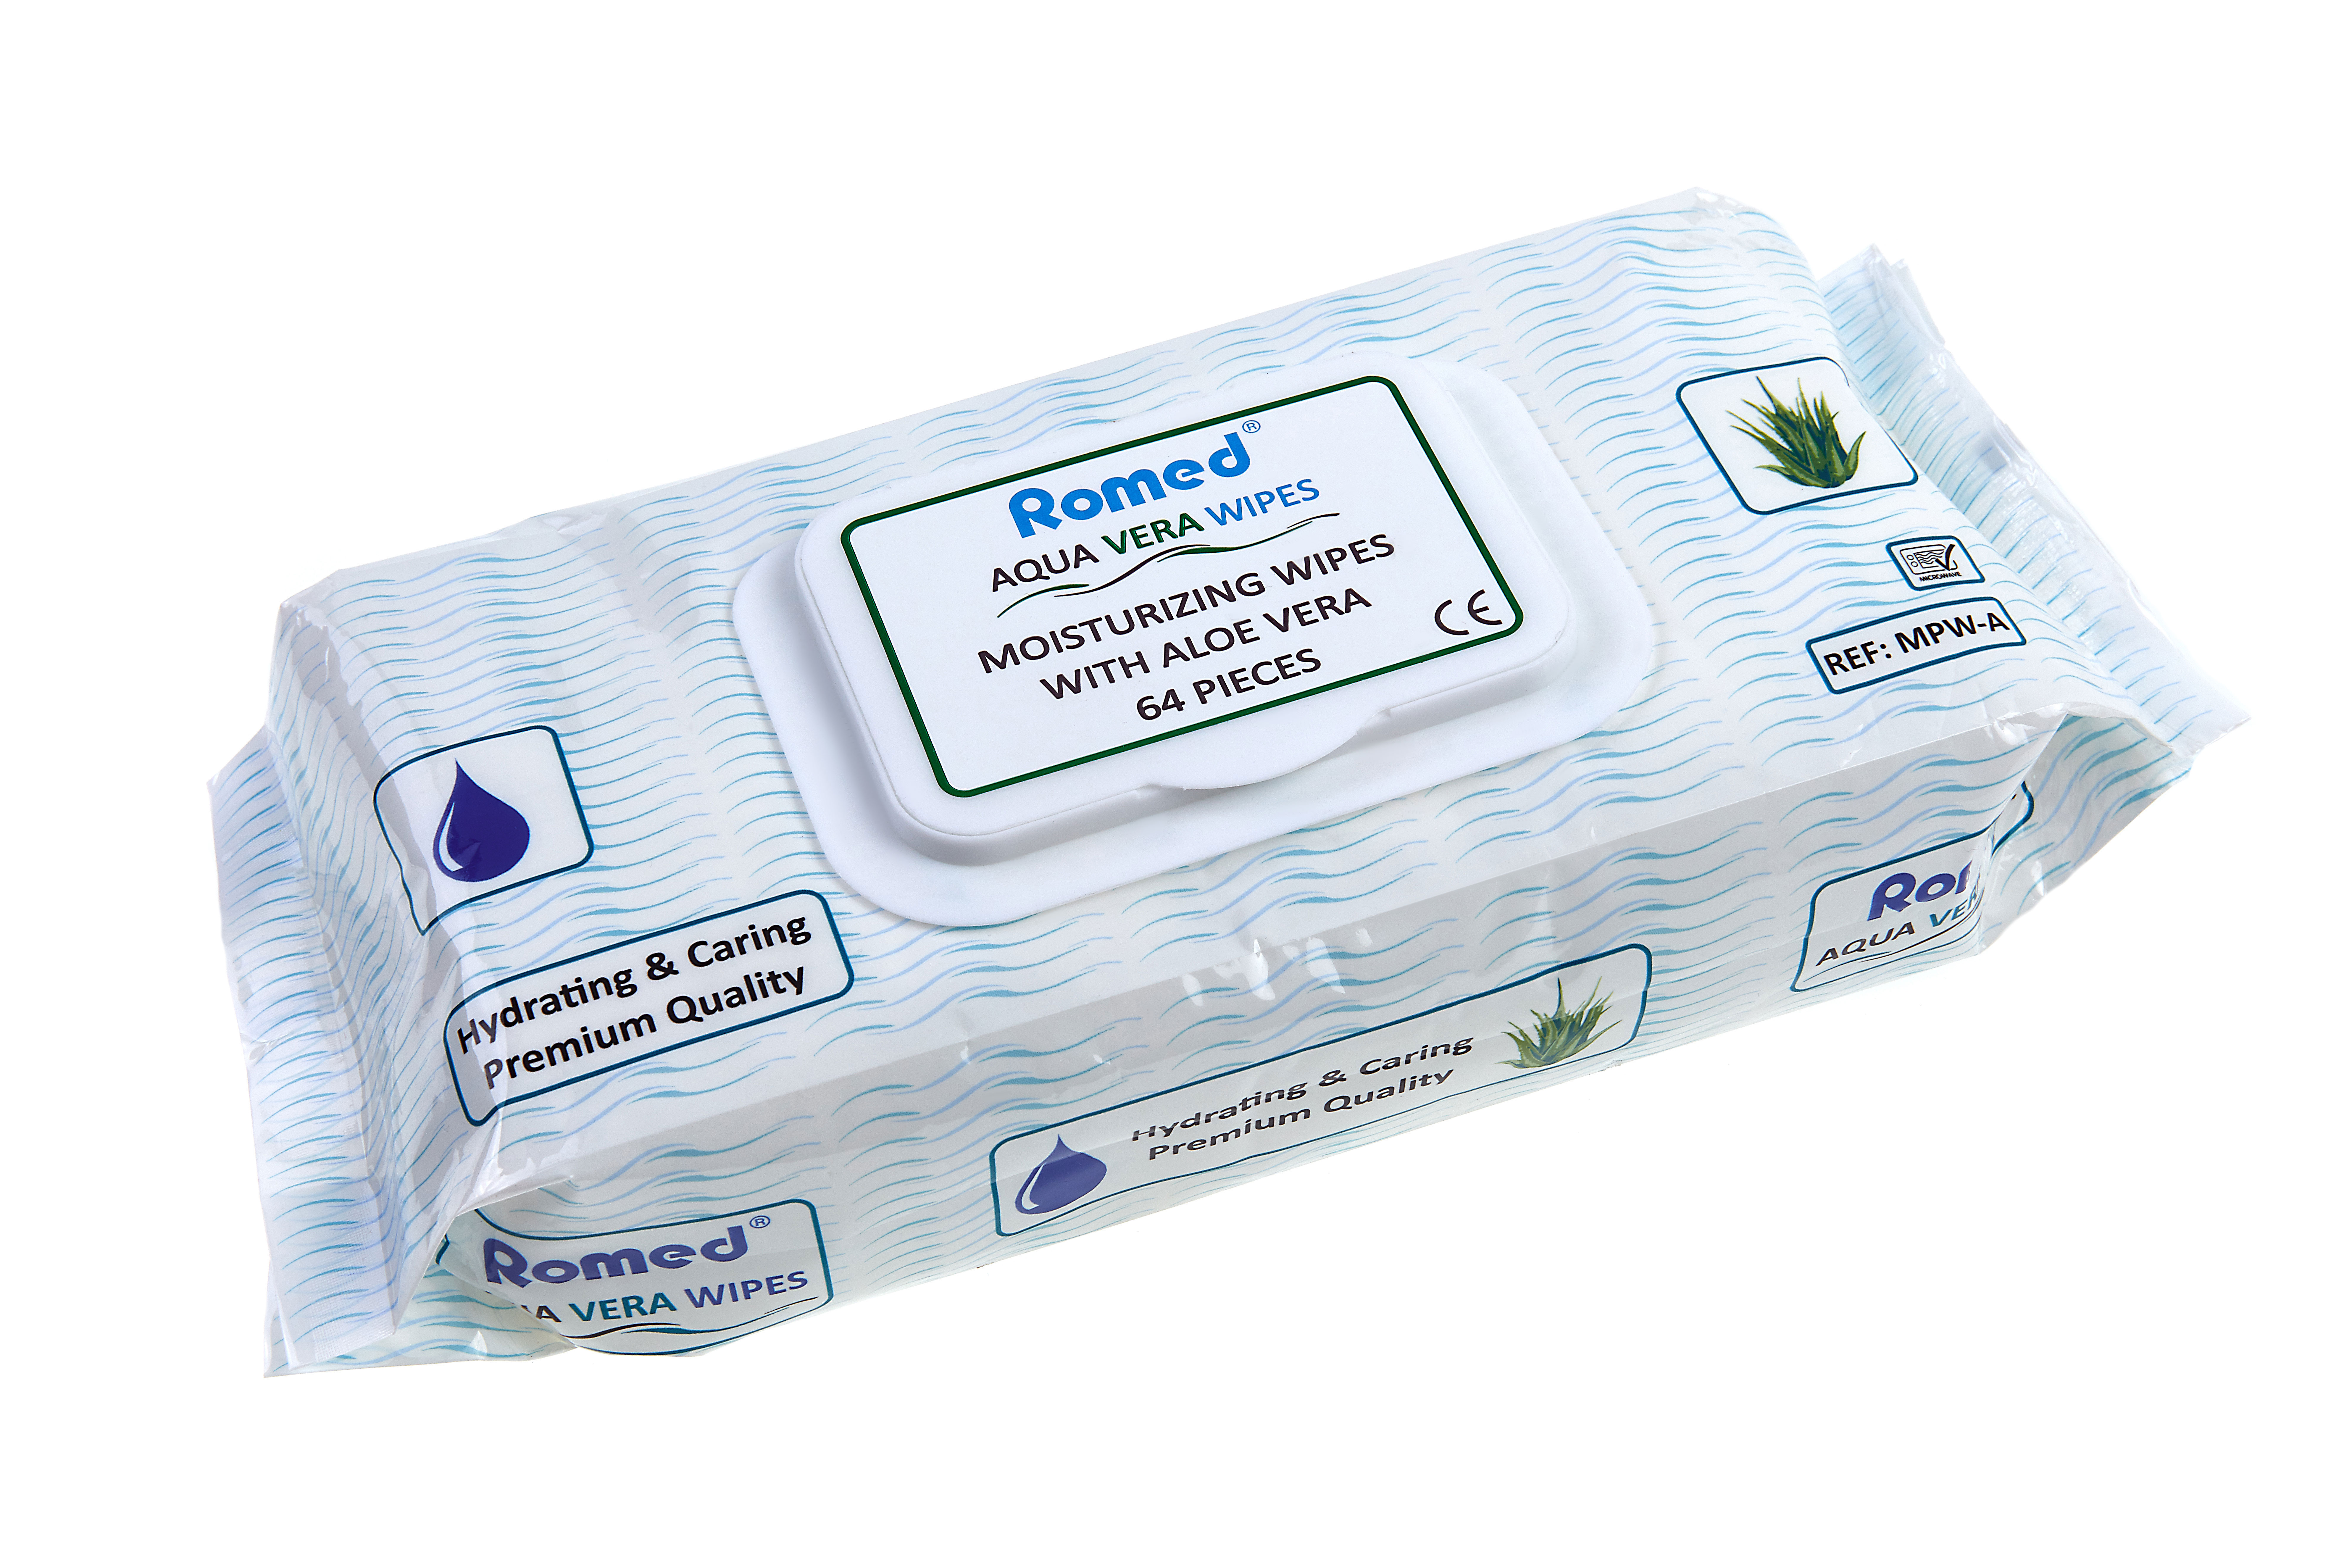 MPW-A Lingettes humides Romed pour patients, à l'aloe vera, 64 unités par sachet distributeur, 12 sachets distributeurs par carton.